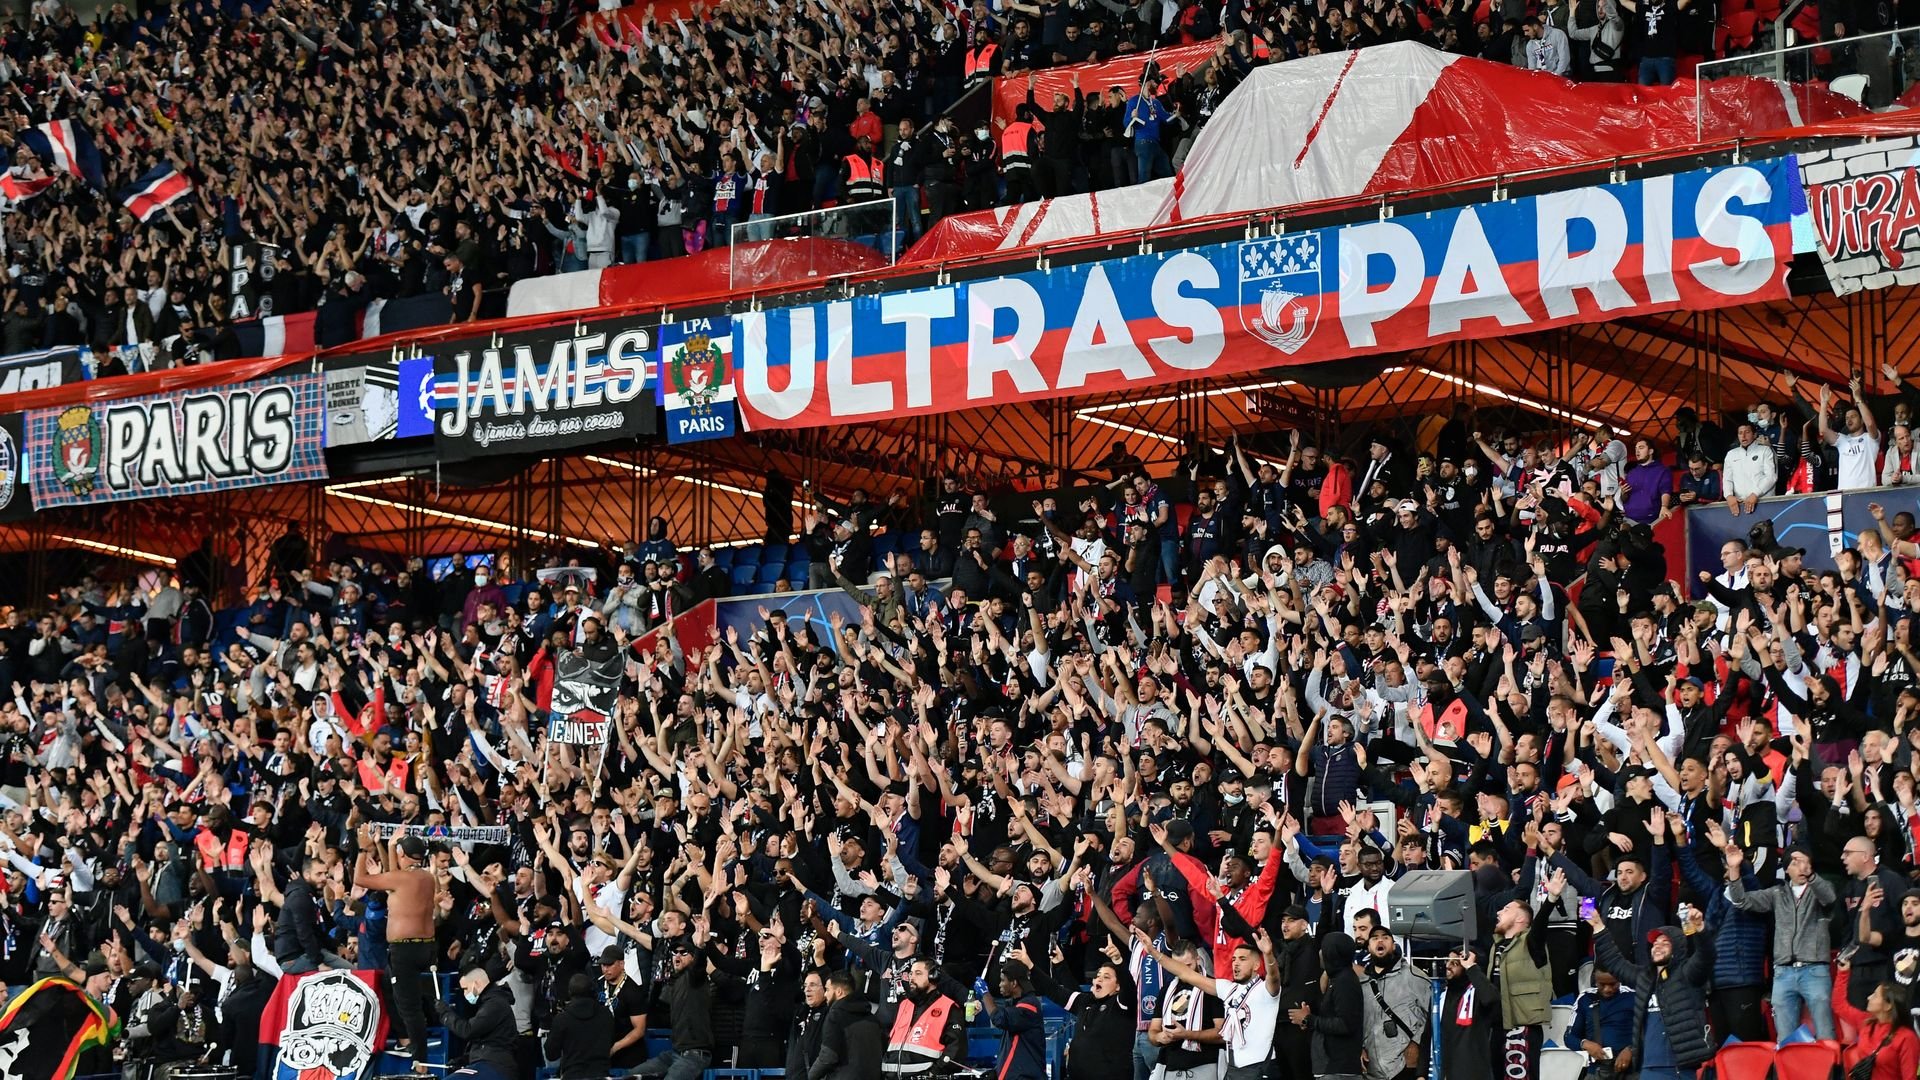 Rupture du jeûne: Les fans du PSG tranchent suite à la décision polémique de la FFF (photo)